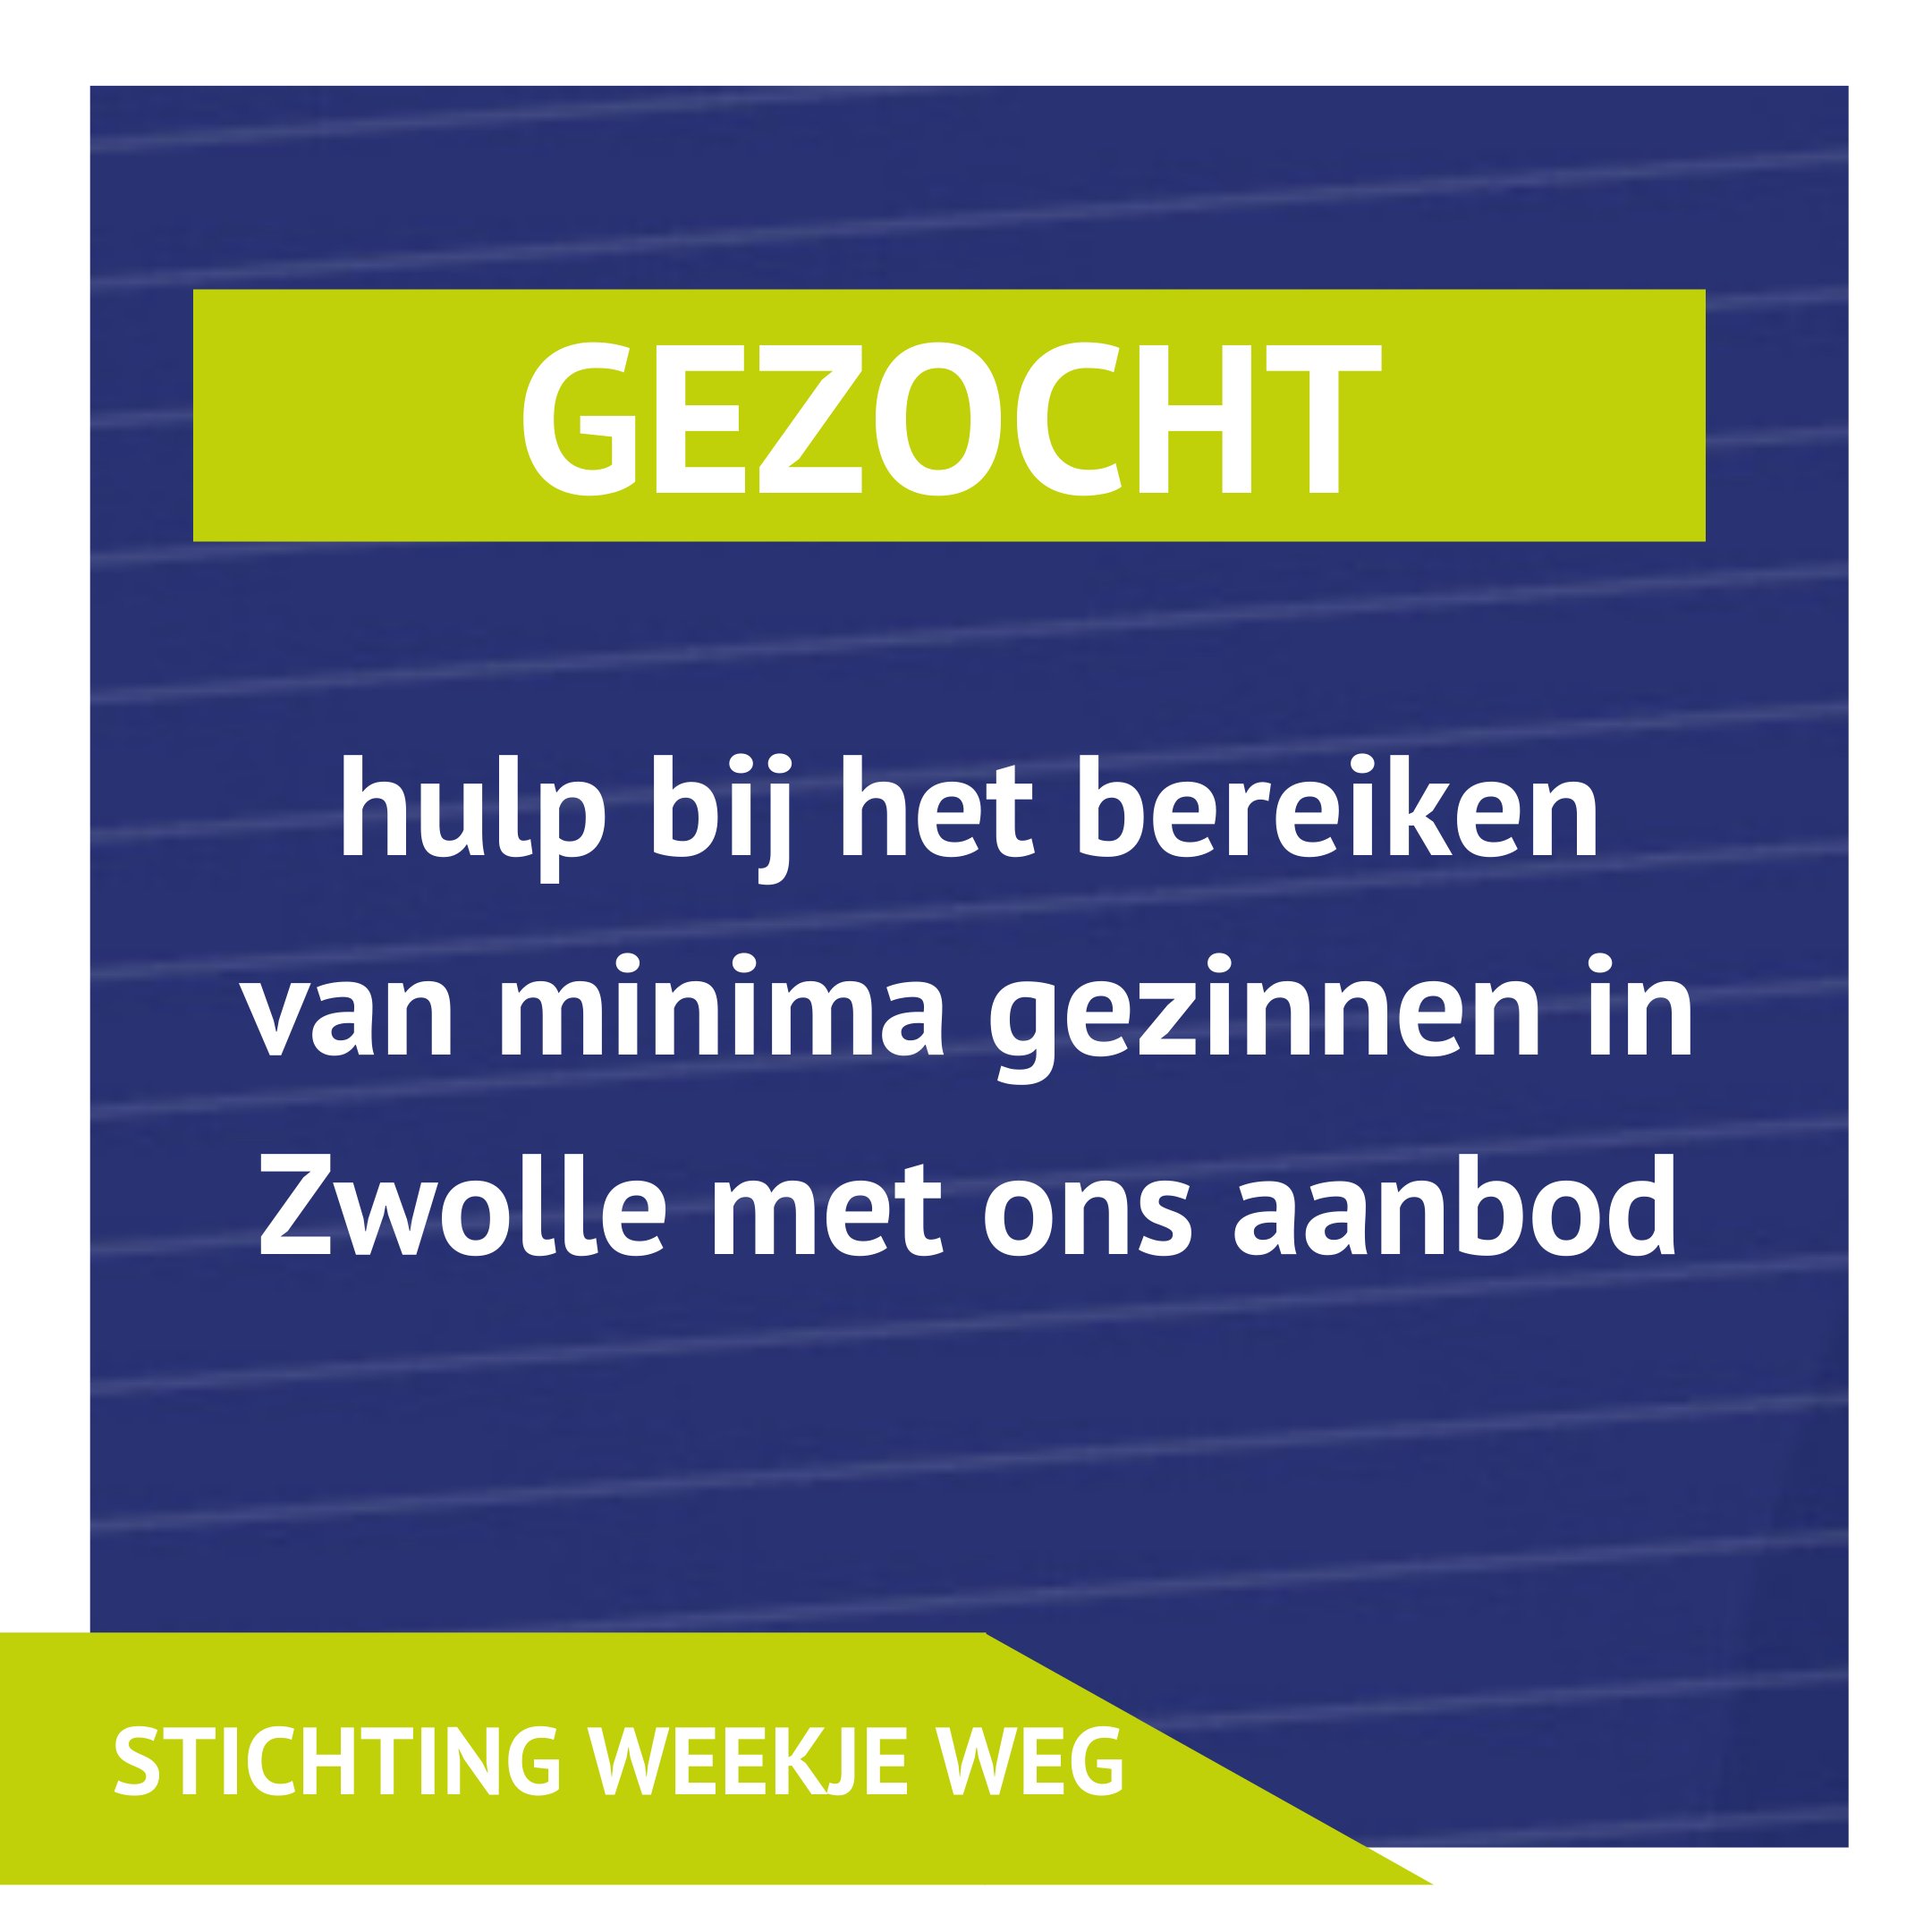 Beursvloer Zwolle on Twitter: "GEZOCHT #9: Stichting Weg maakt vakanties voor minima gezinnen mogelijk. Ze zoeken een communicatie &amp; PR topper die helpen bij het bereiken van hun Kun